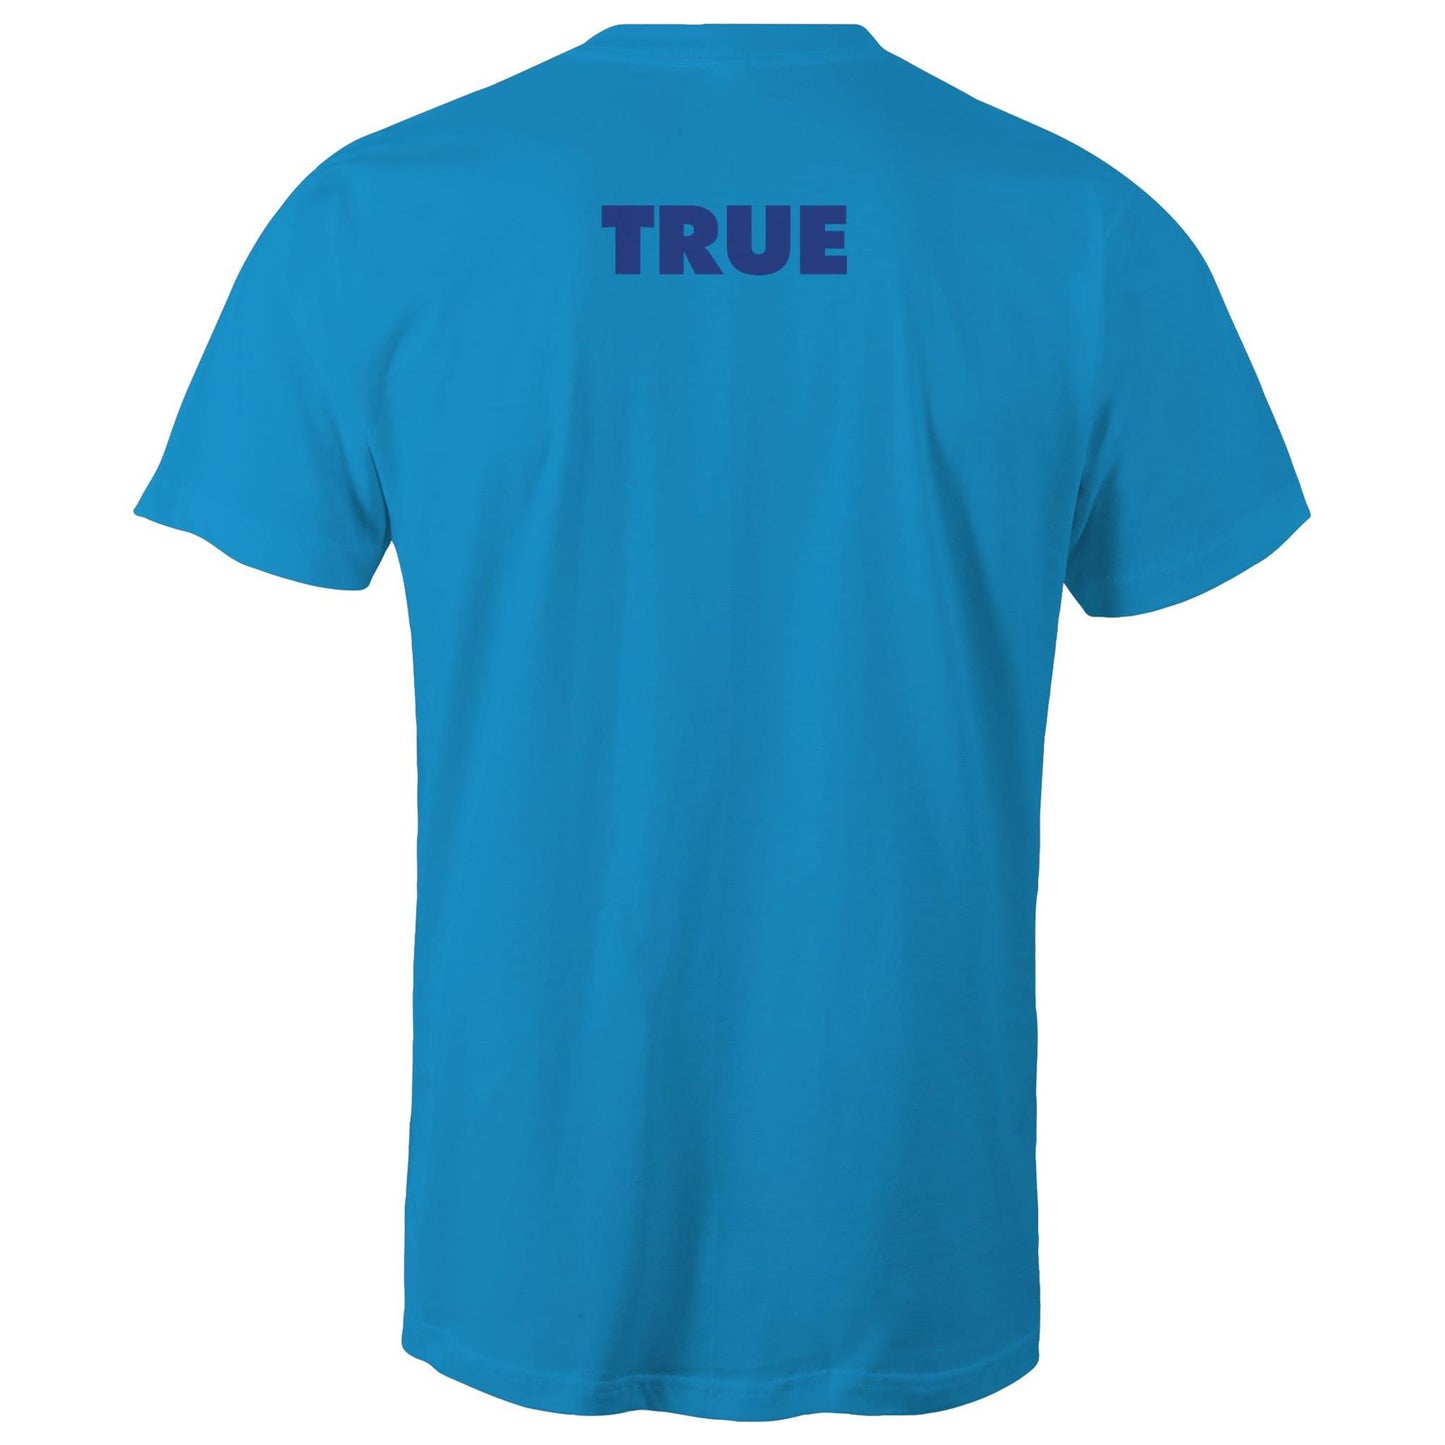 BLUE T Shirts for Men (Unisex)